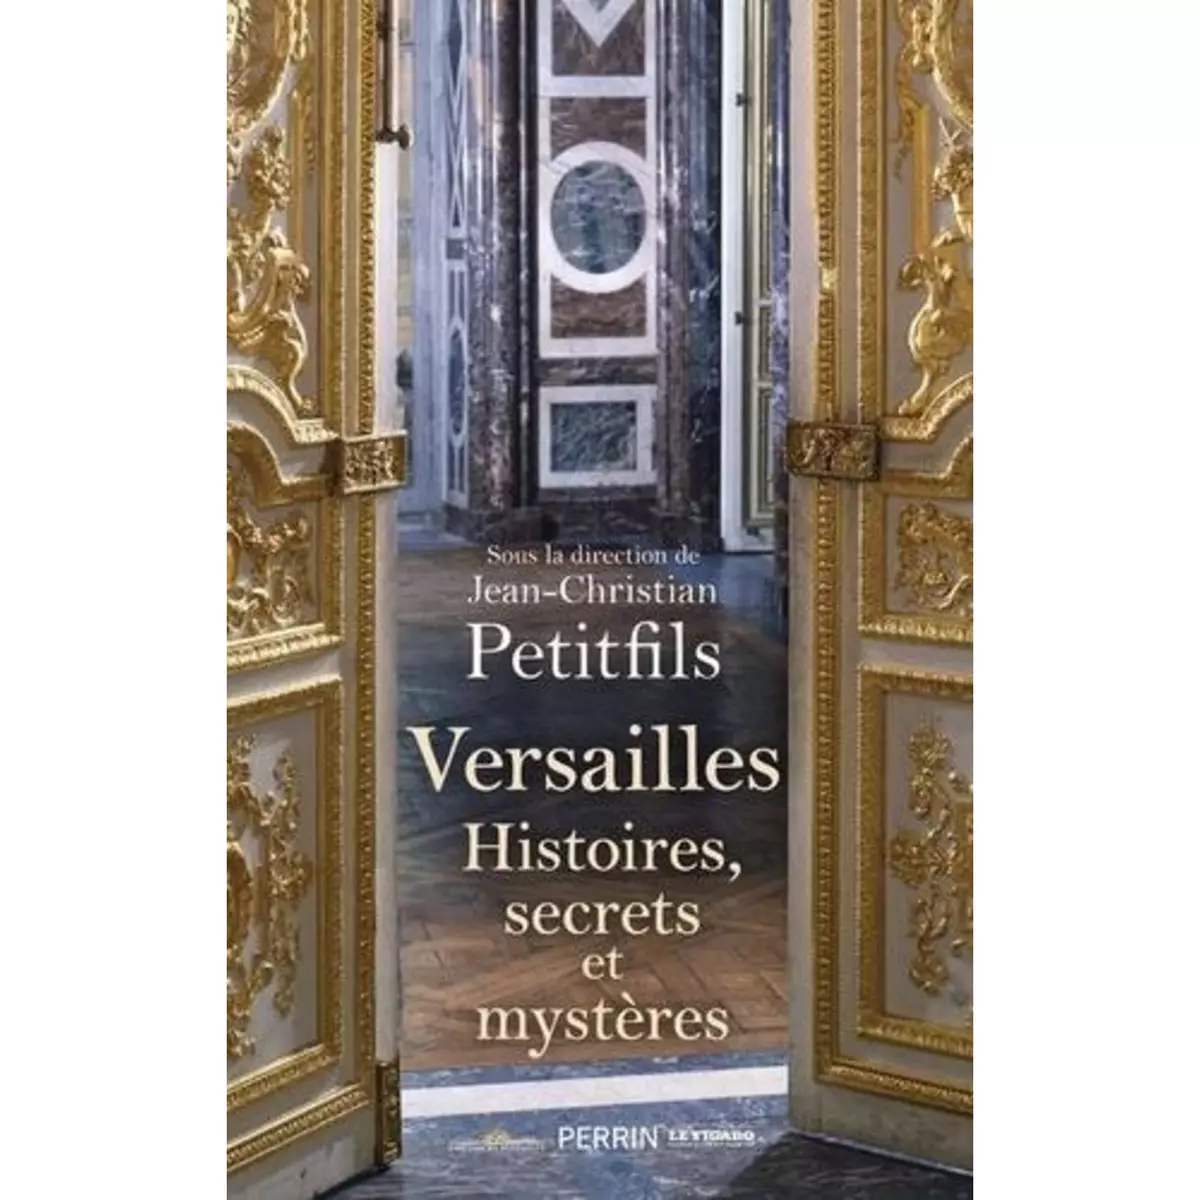  VERSAILLES. HISTOIRES, SECRETS ET MYSTERES, Petitfils Jean-Christian